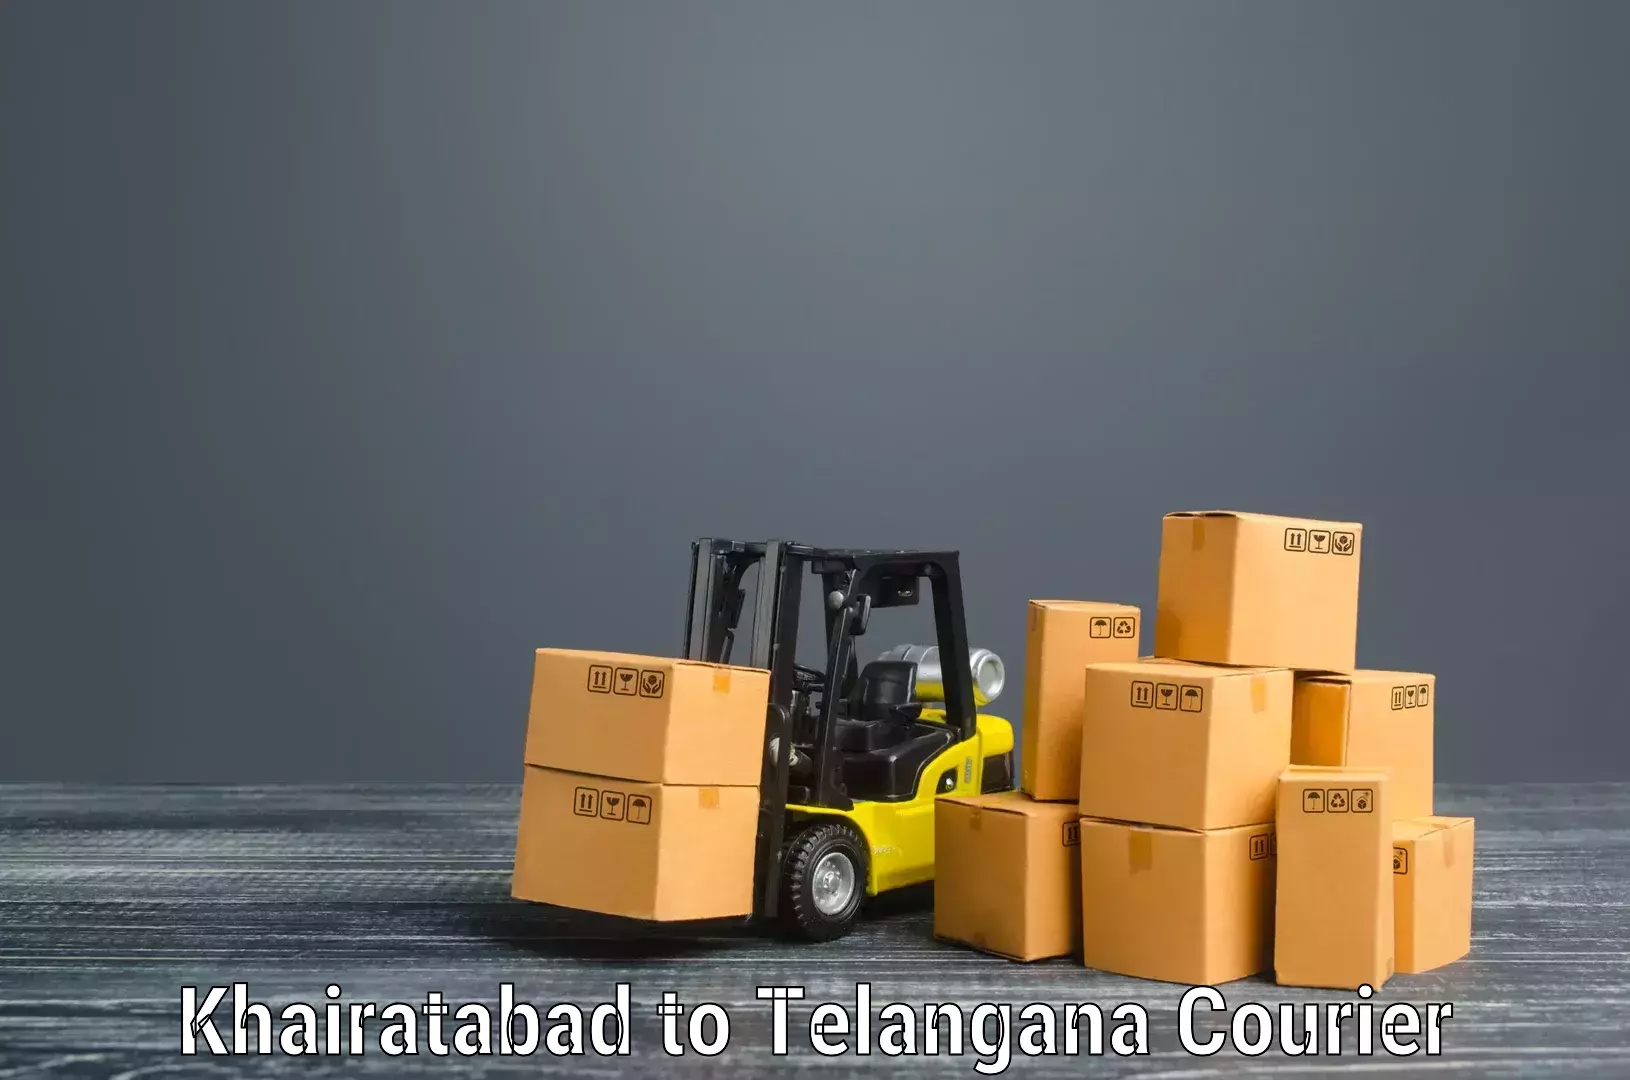 Skilled furniture movers Khairatabad to Khairatabad